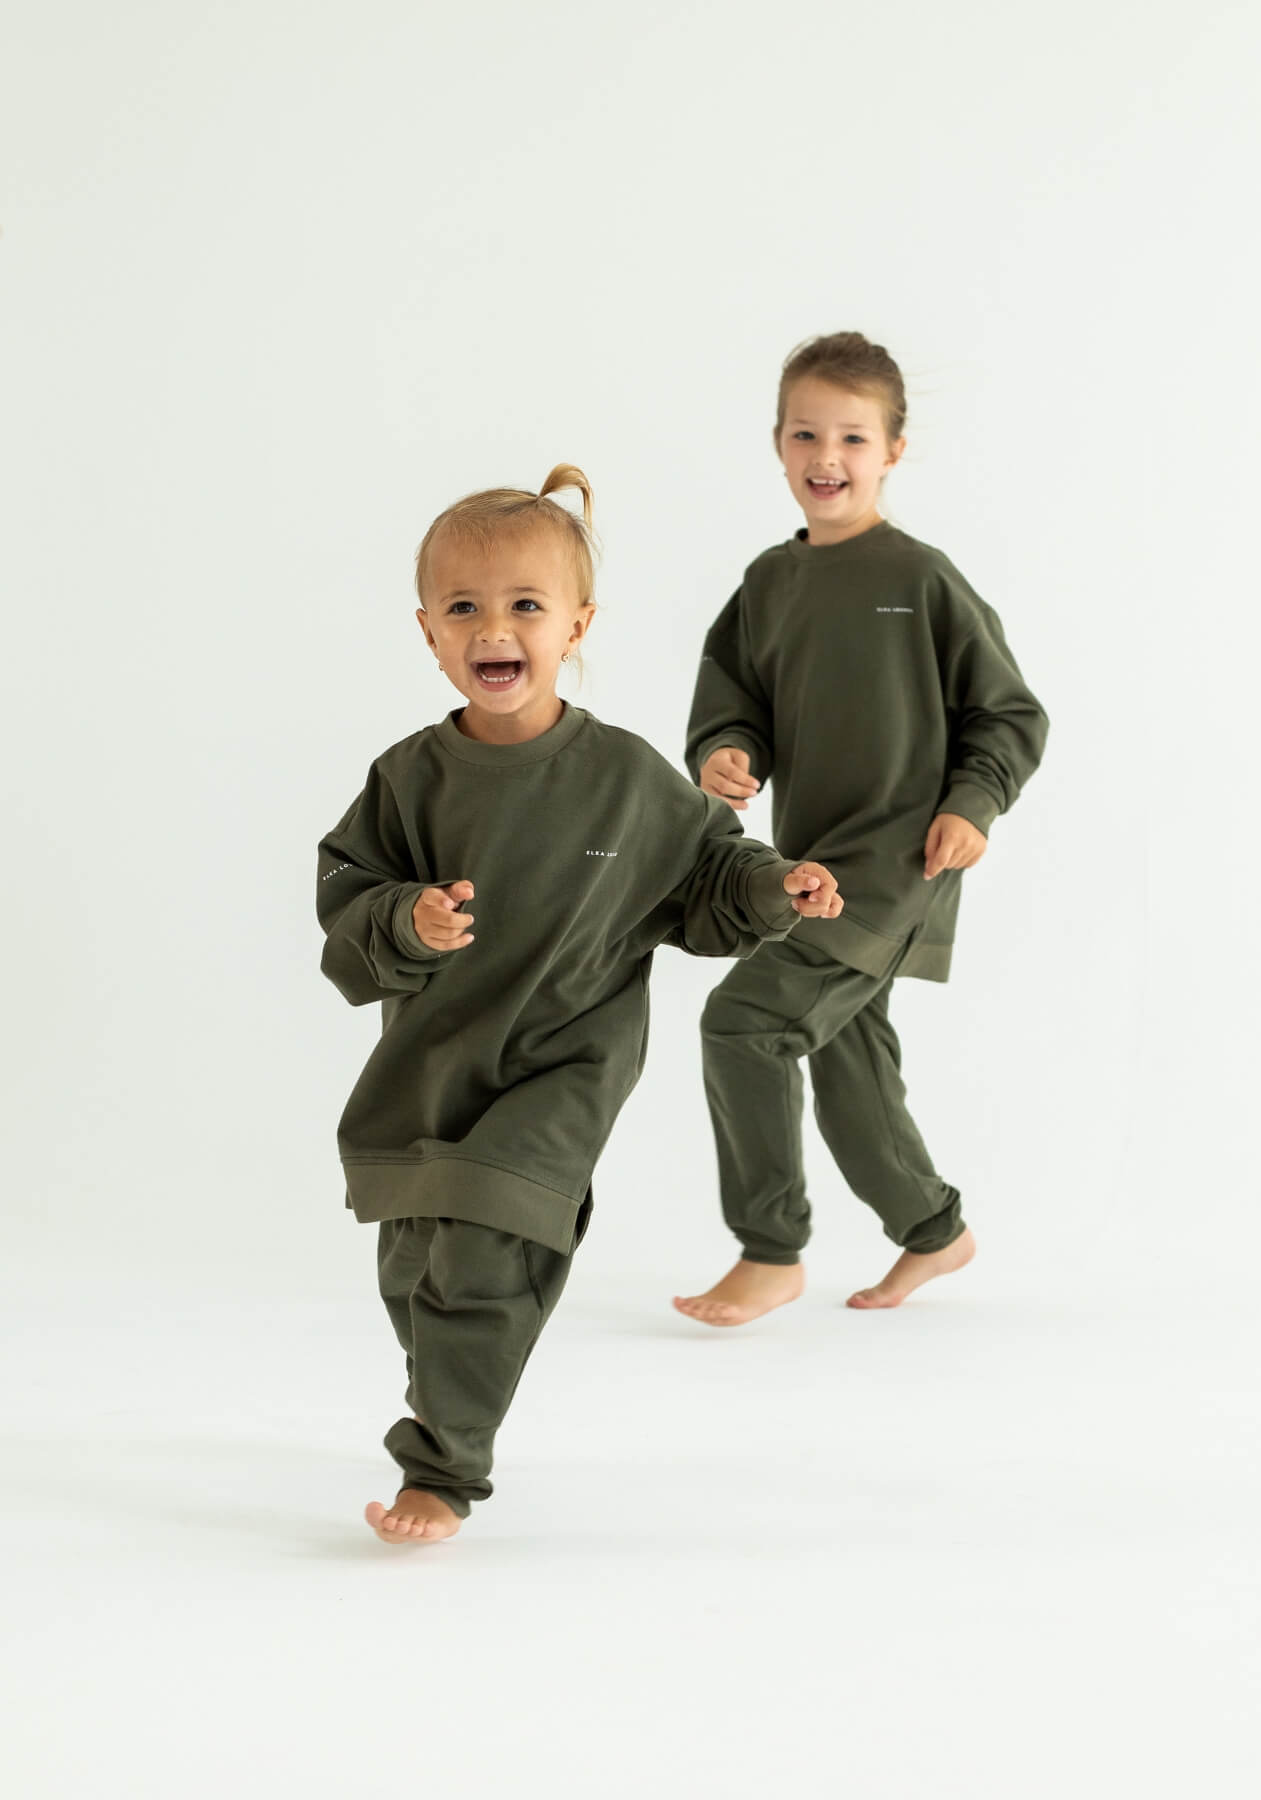 Children's bluza bez kaptura z bawełny organicznej Moss green - Oversized